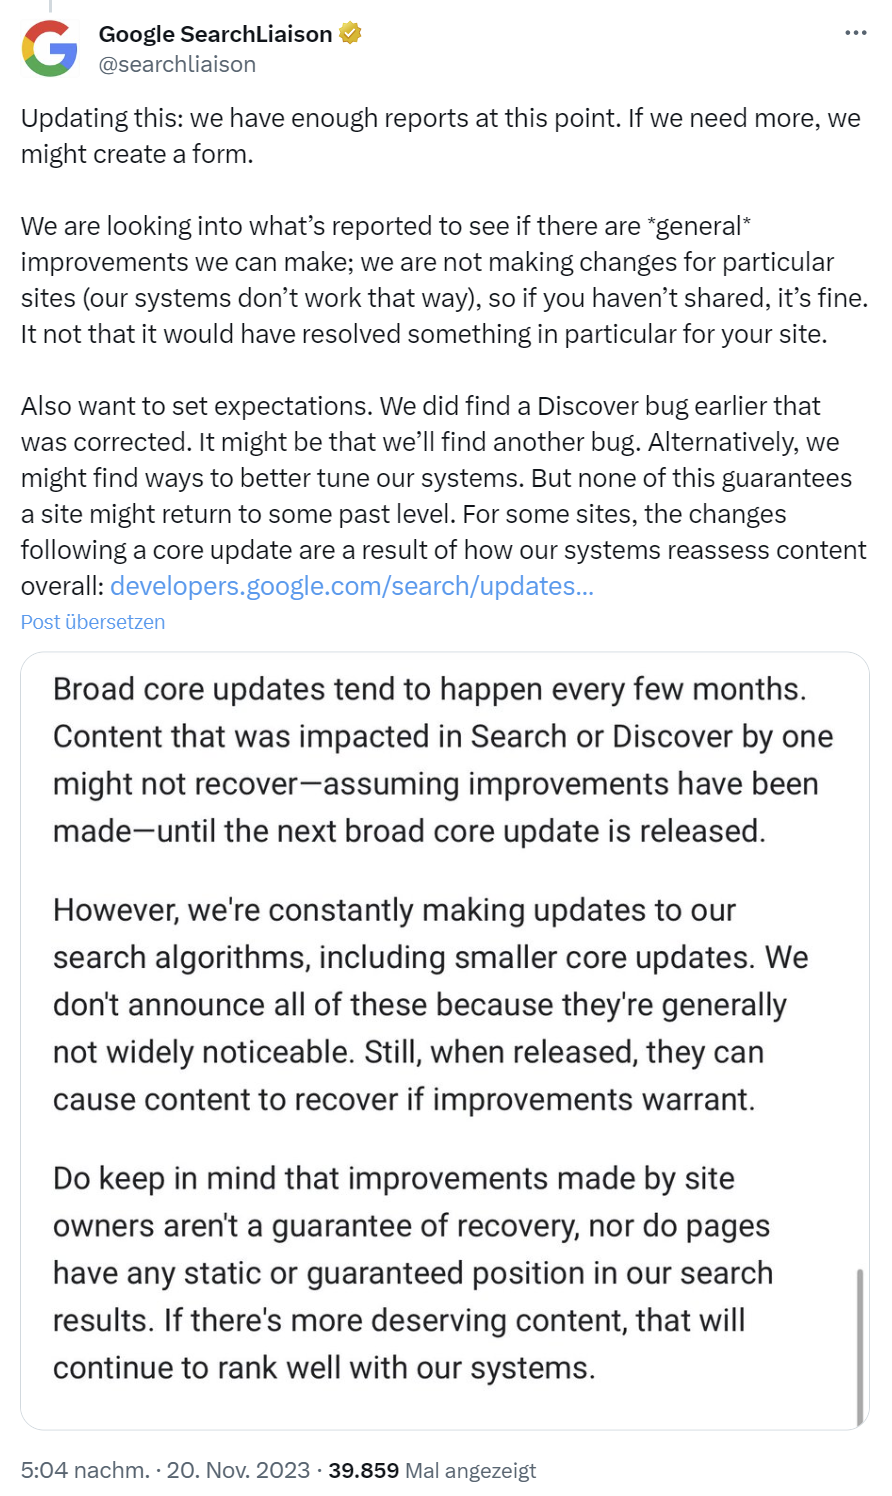 Google: Nach Rückgang des Discover-Traffics keine Garantie zu Rückkehr auf vorheriges Niveau